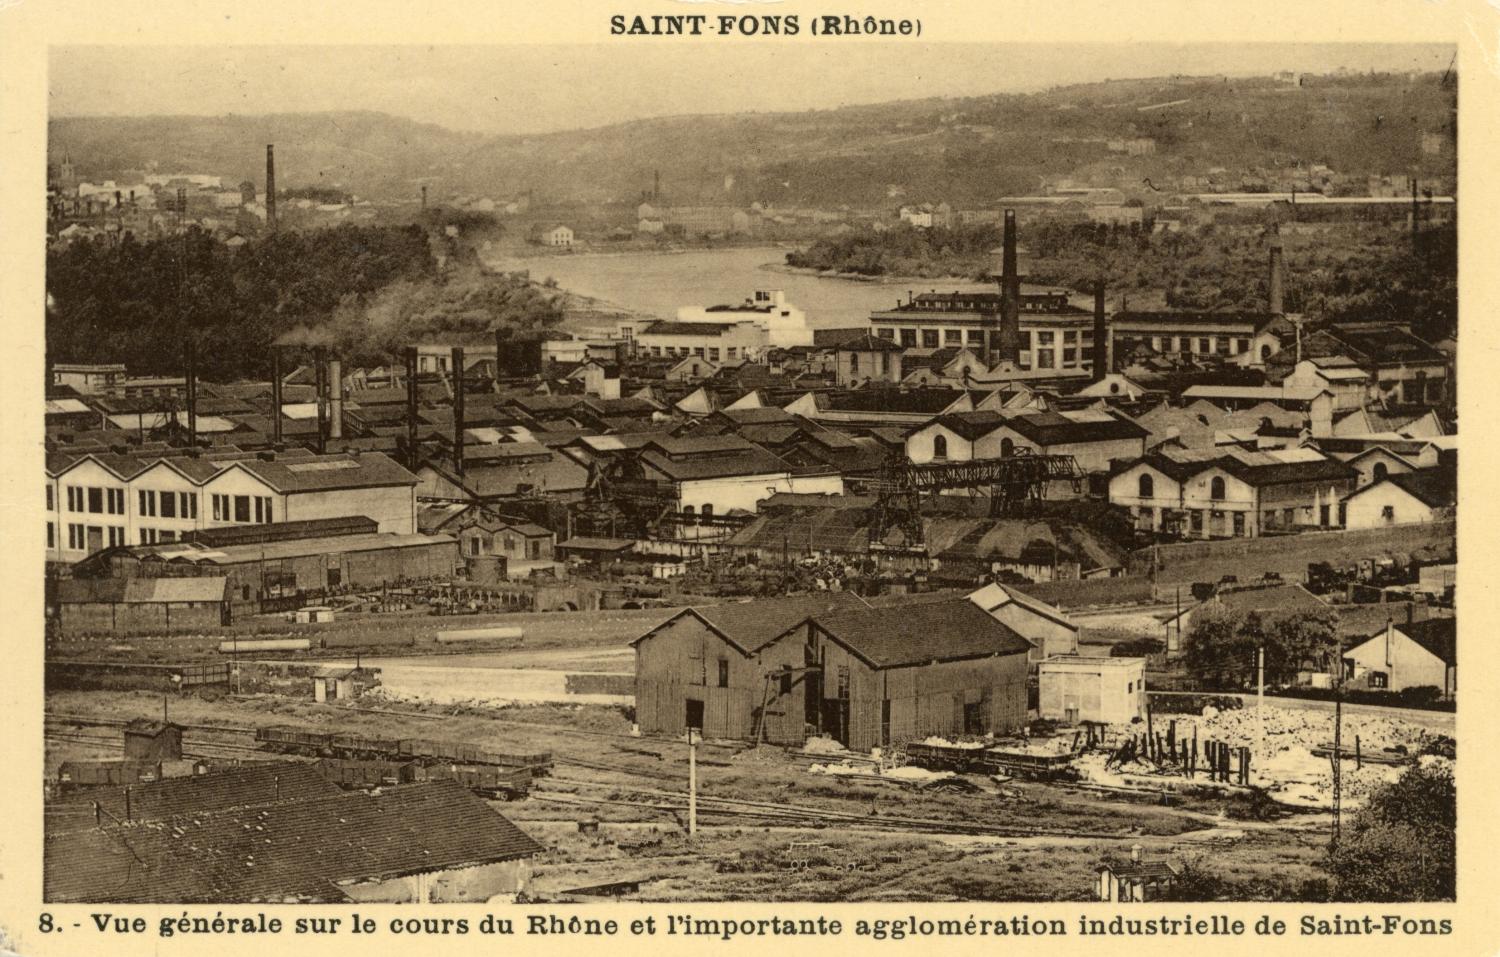 Saint-Fons (Rhône). - Vue générale sur le cours du Rhône et l'importante agglomération industrielle de Saint-Fons